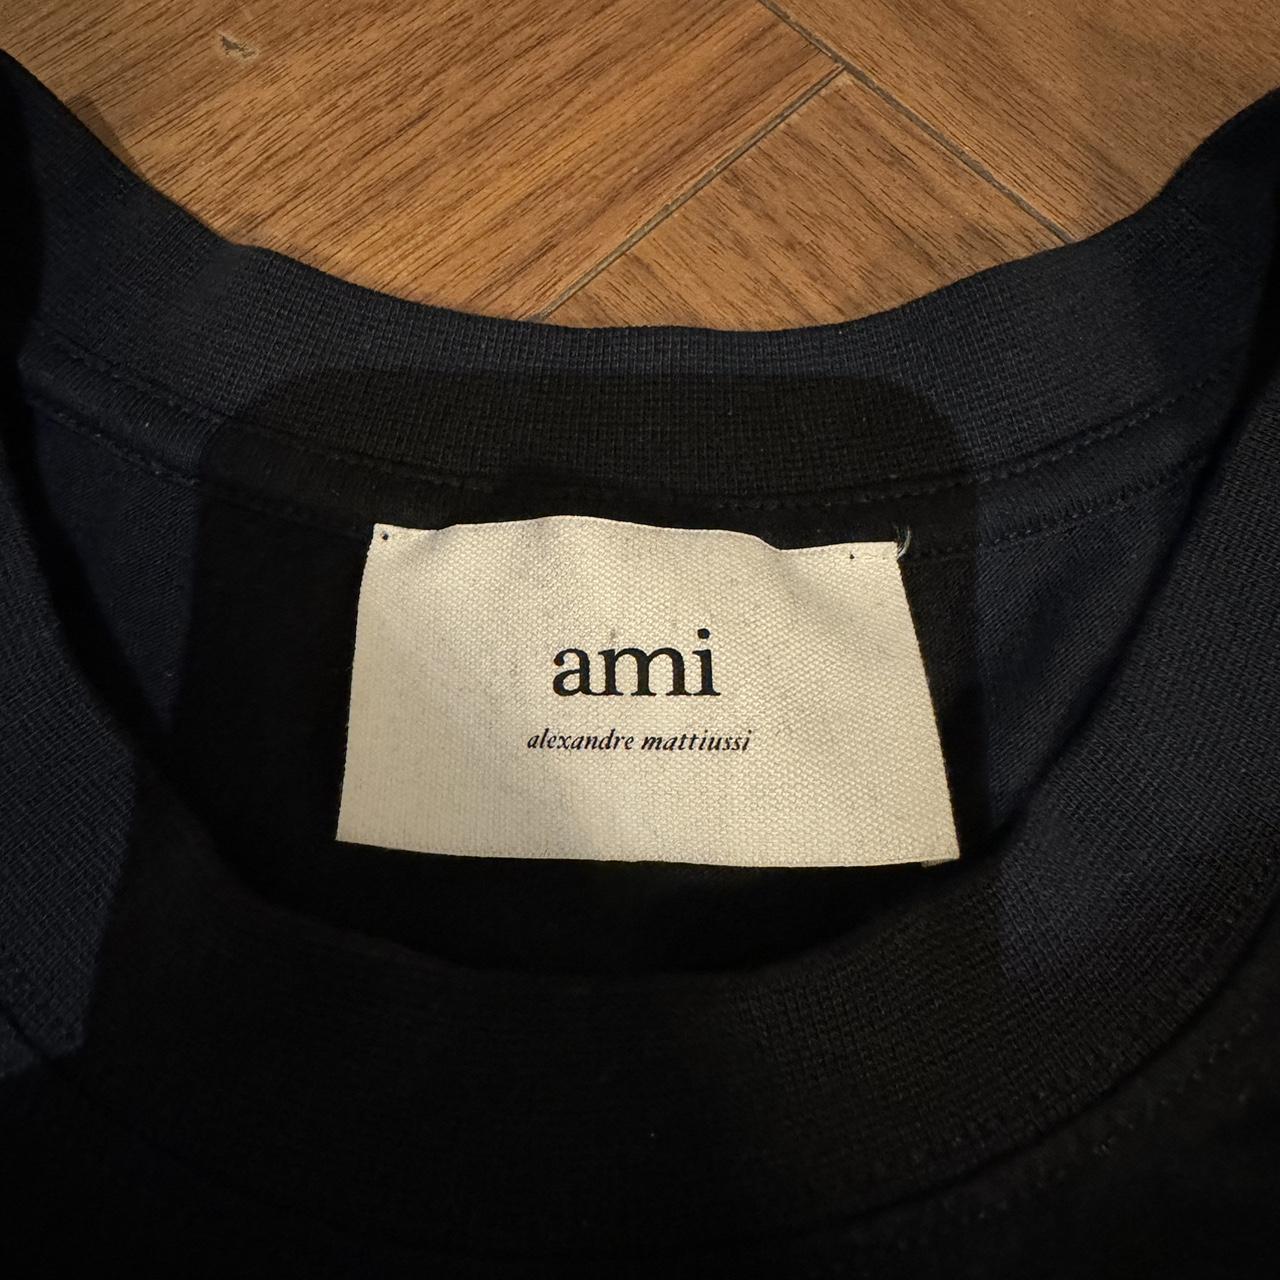 AMI PARIS black t shirt in size XL, excellent... - Depop